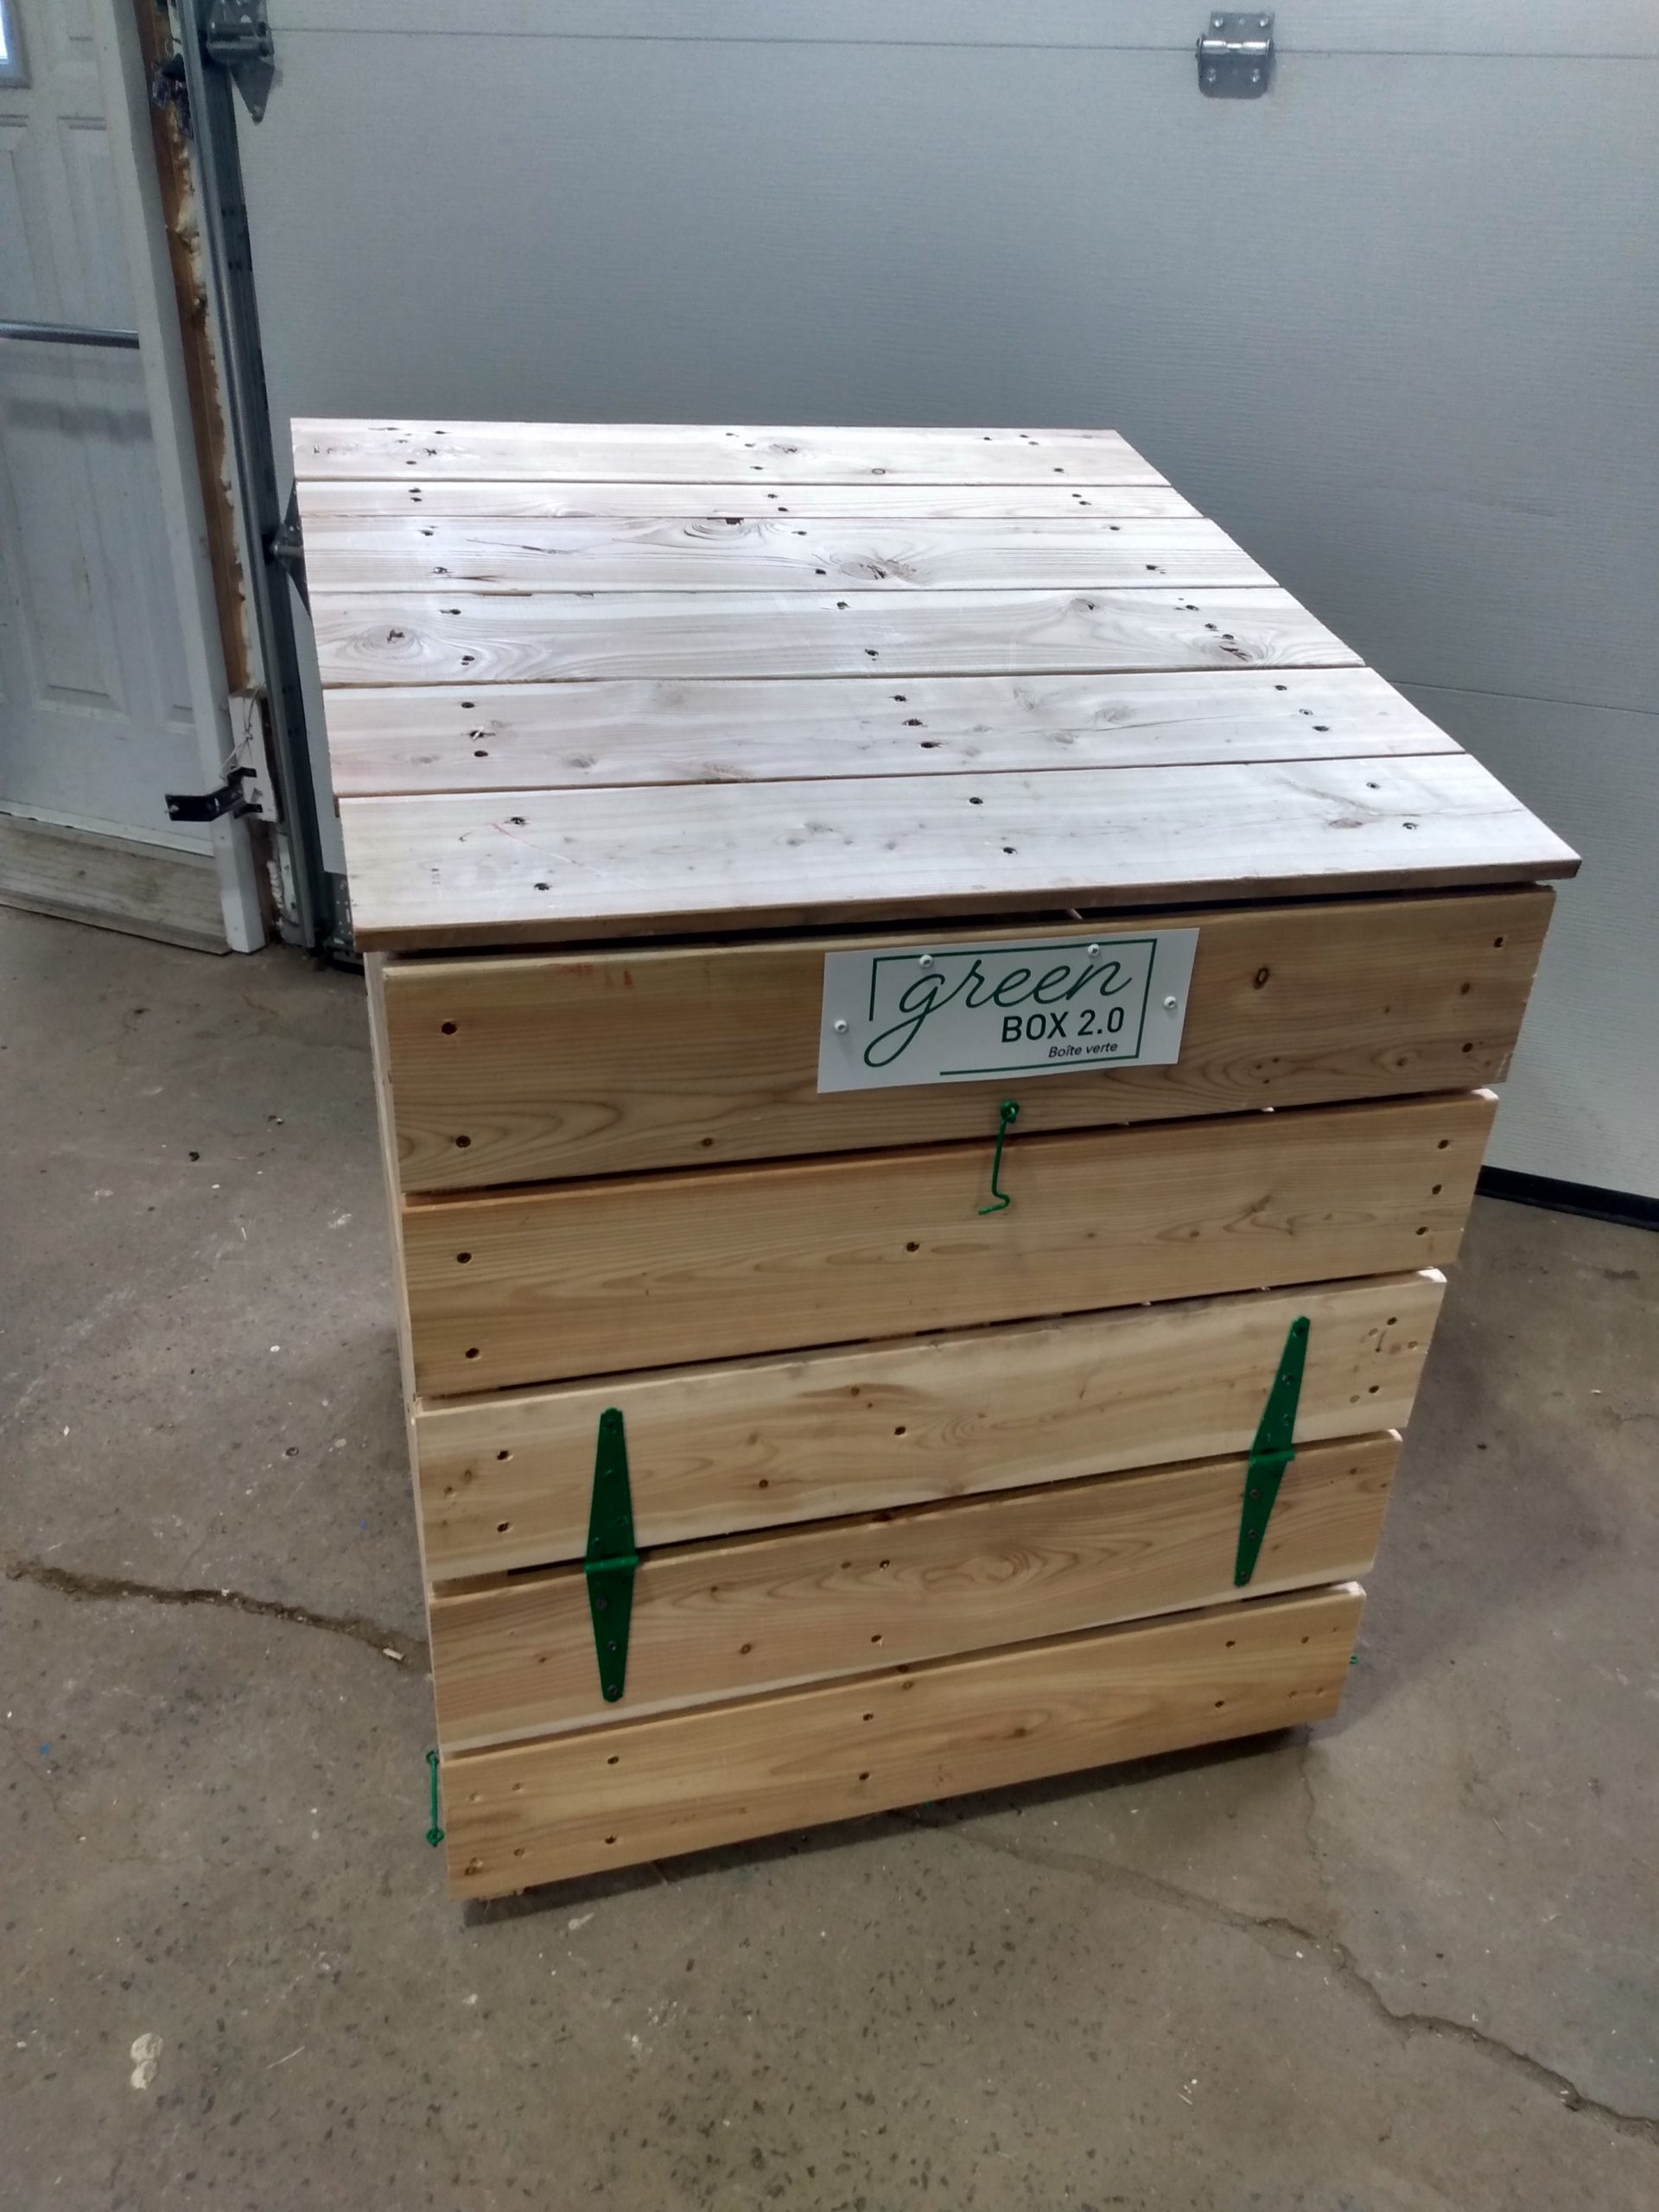 Composteur écologique en bois (Green Box 2.0 Boîte verte) - Serge Fortier